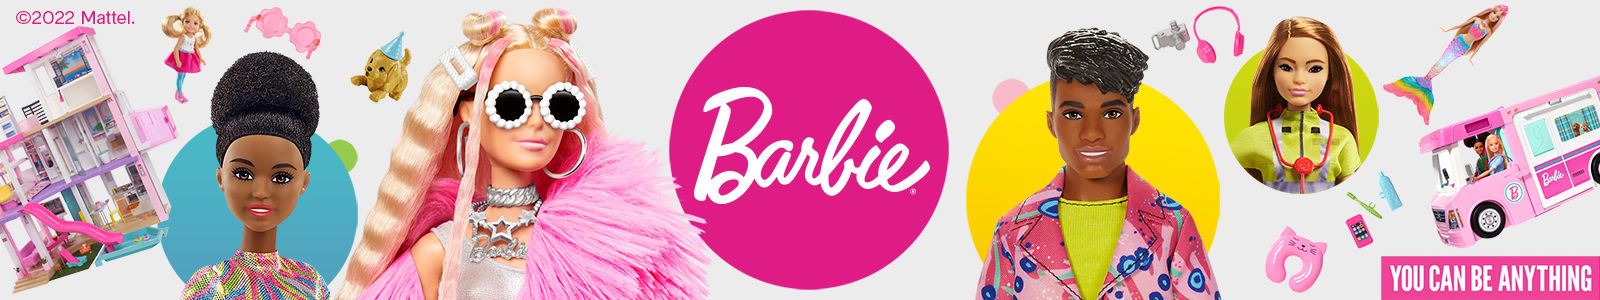 Barbie Fashion Plates Set, 46 Piece - Macy's